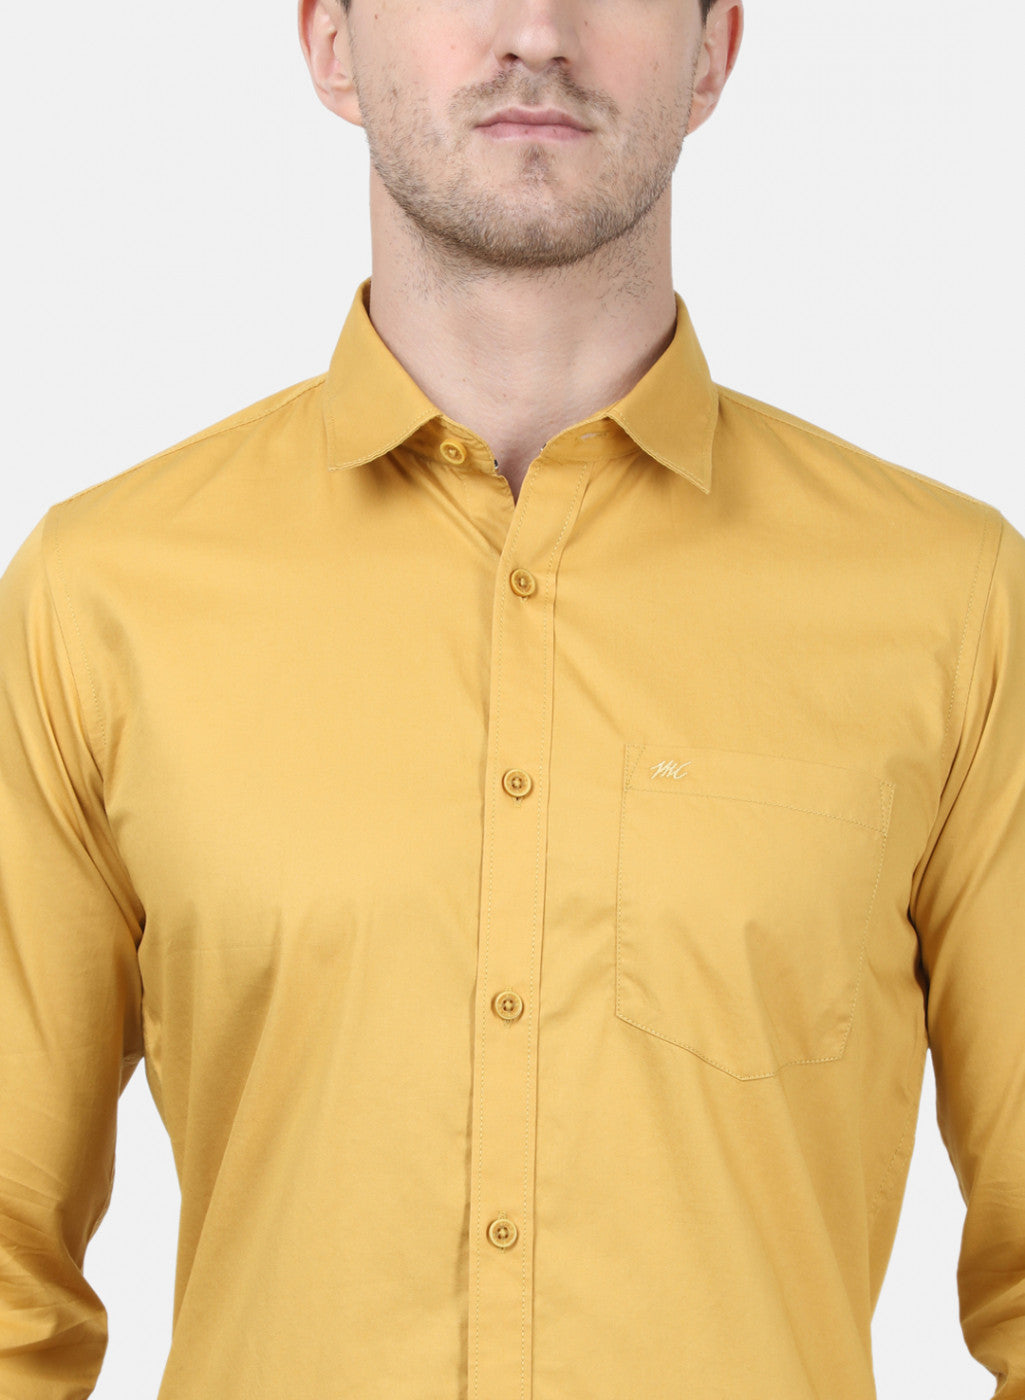 Mens Mustard Solid Shirts